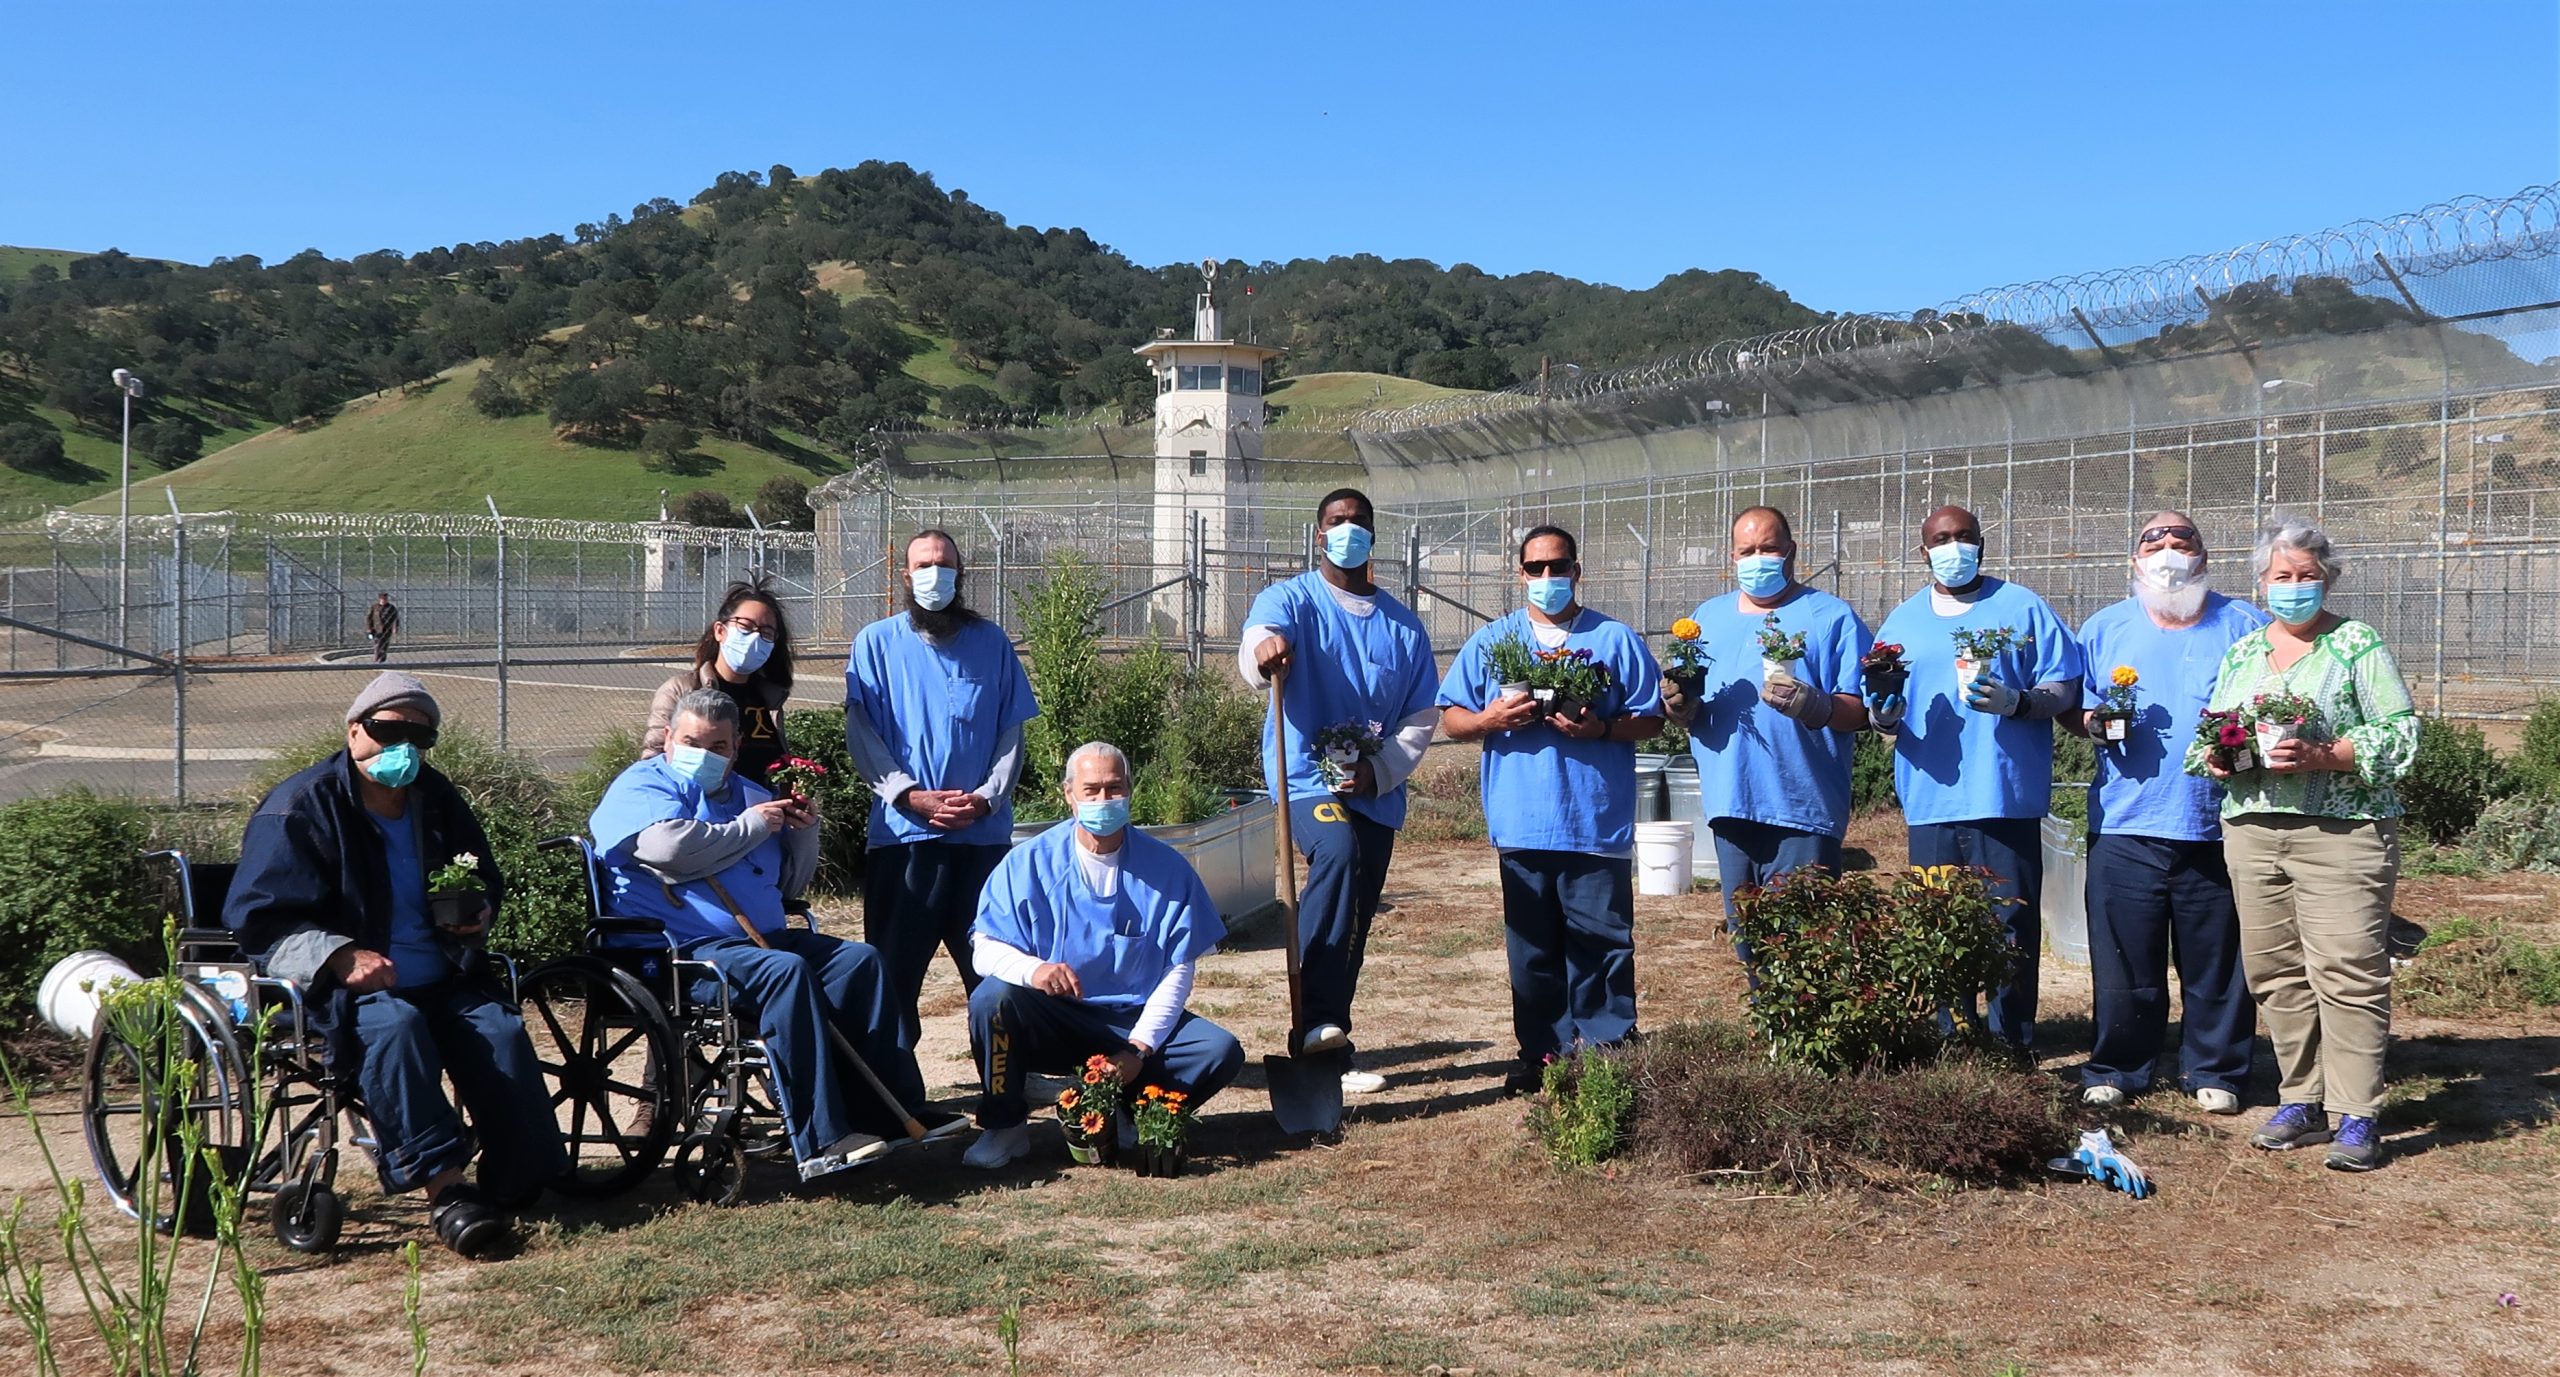 Prison Insight Garden Program participants hold plants.